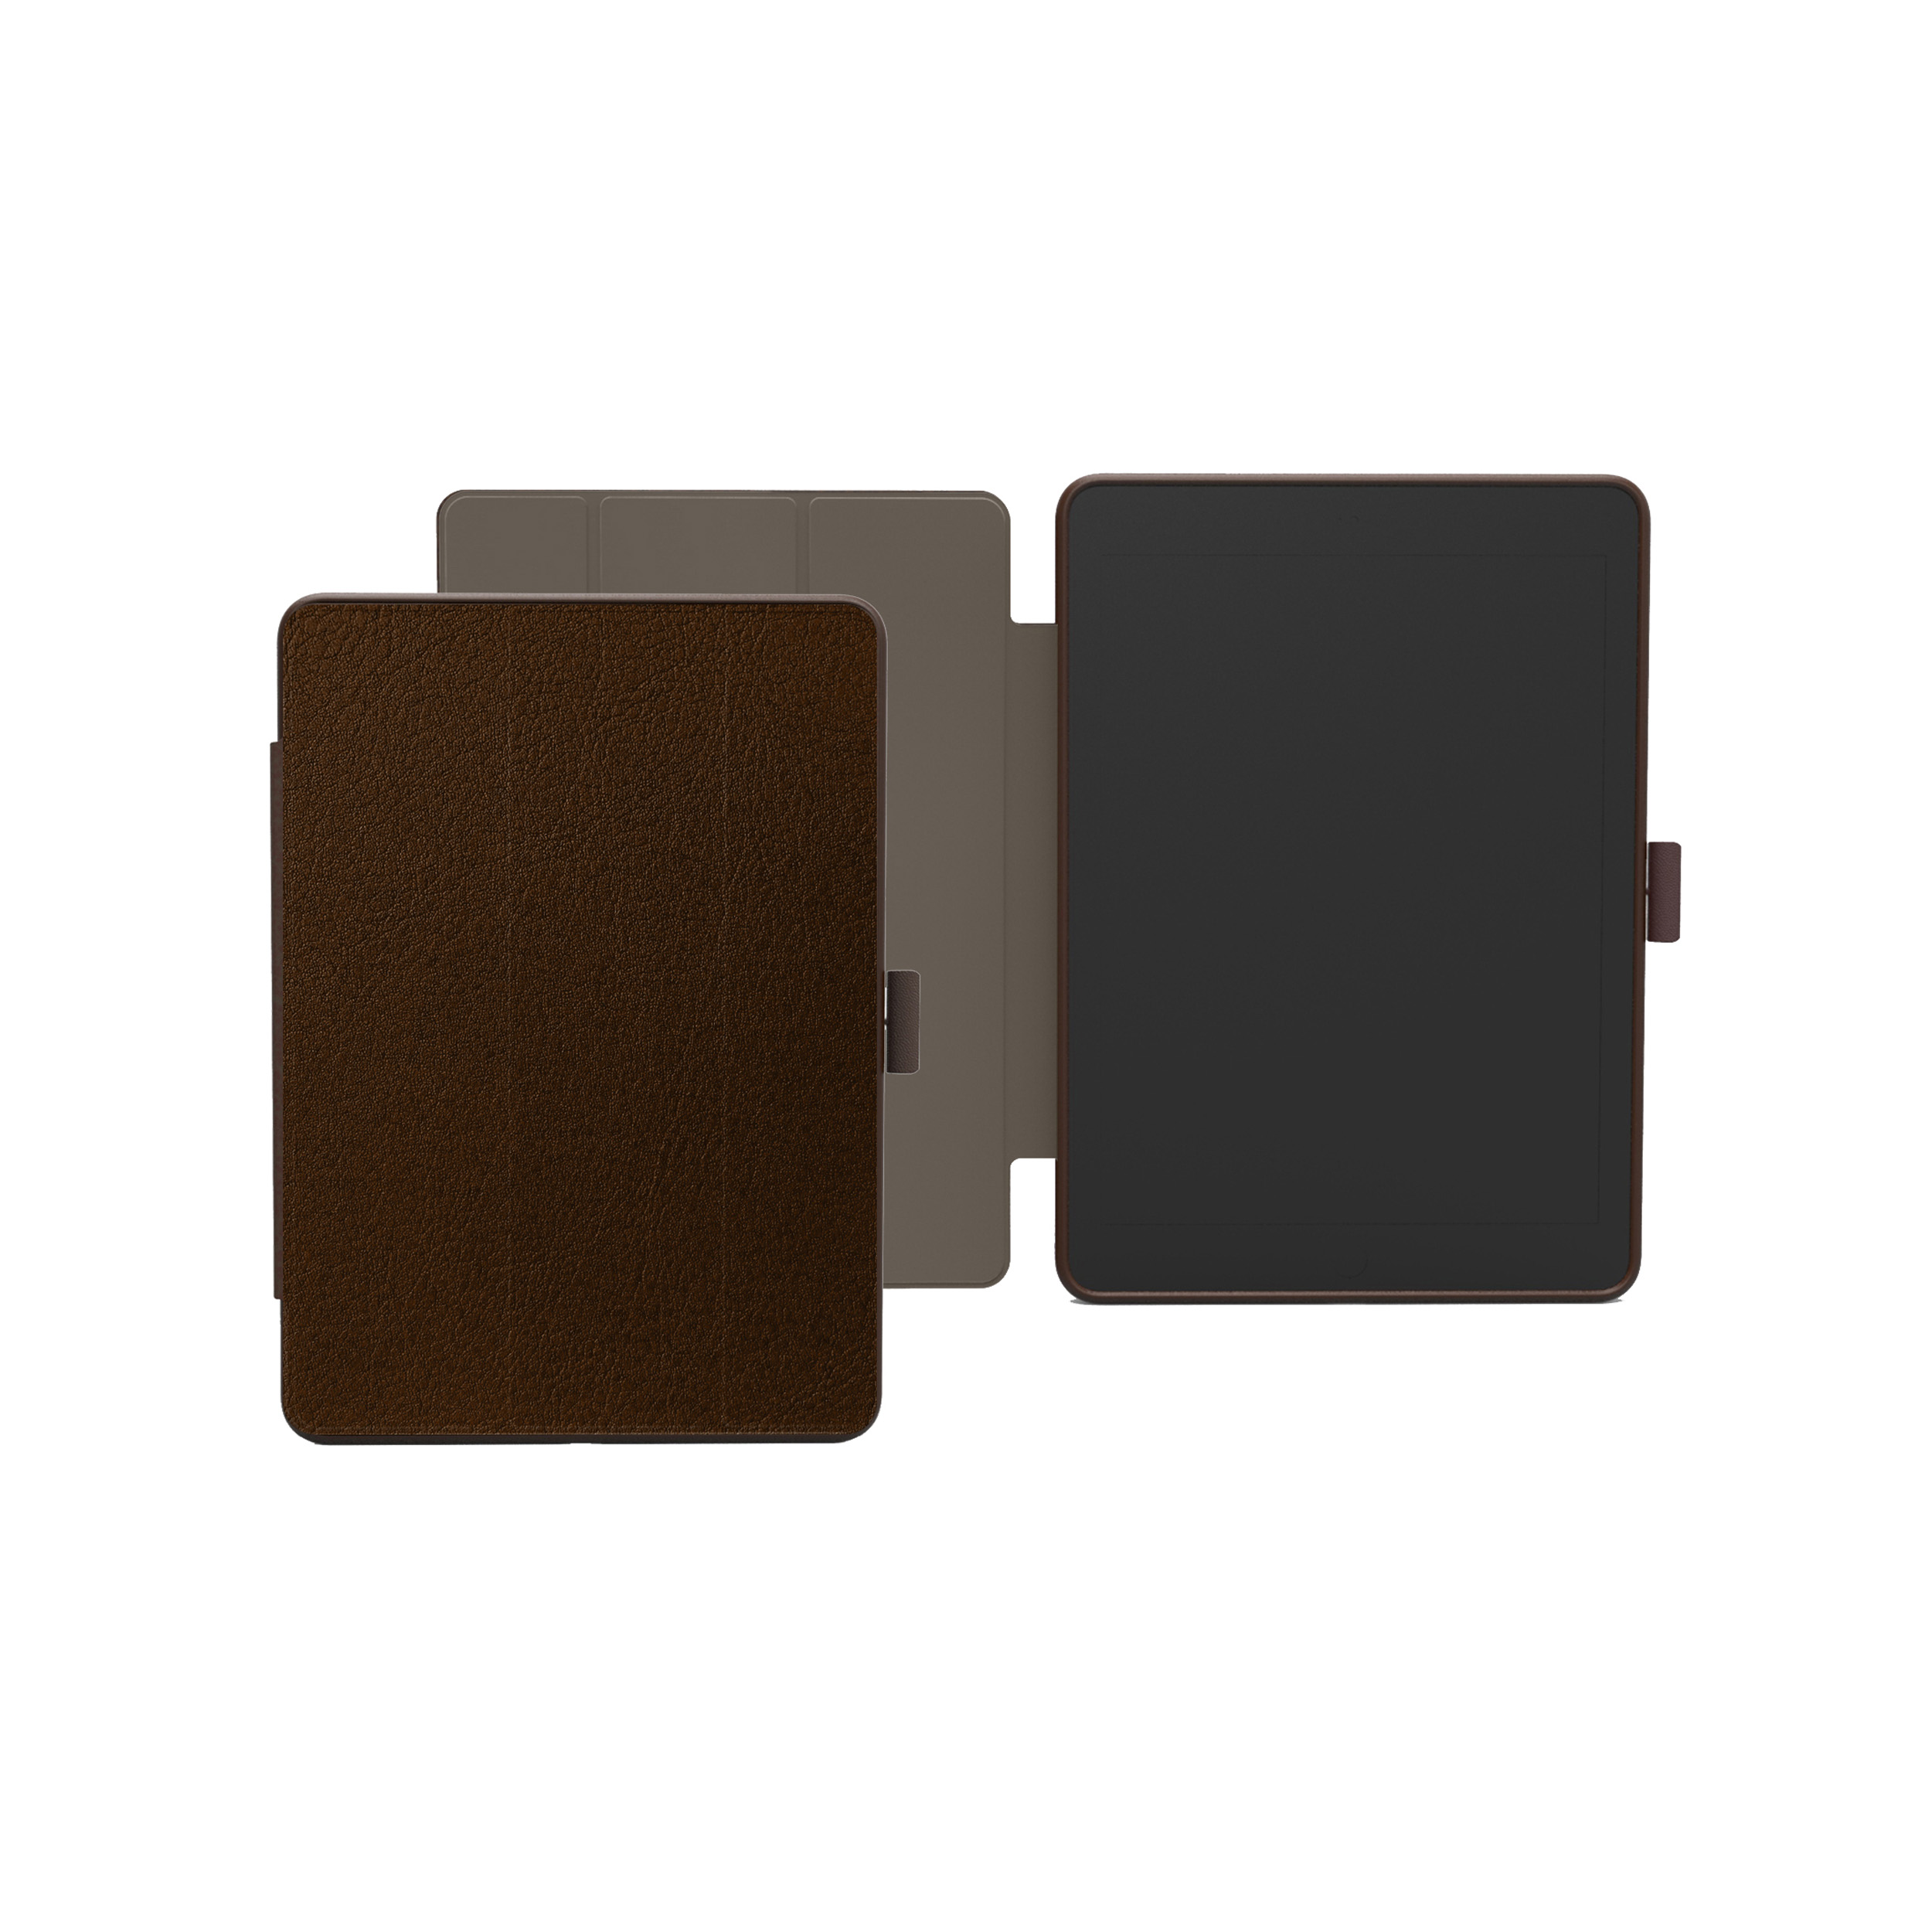 KMP Schutzhülle für iPad 9,7 biobasiertes Apple mit für Silikon, Backcover choco Choco Protective Stiftfach in PC, Mirkofaser, Lederoptik, Brown Material brown case